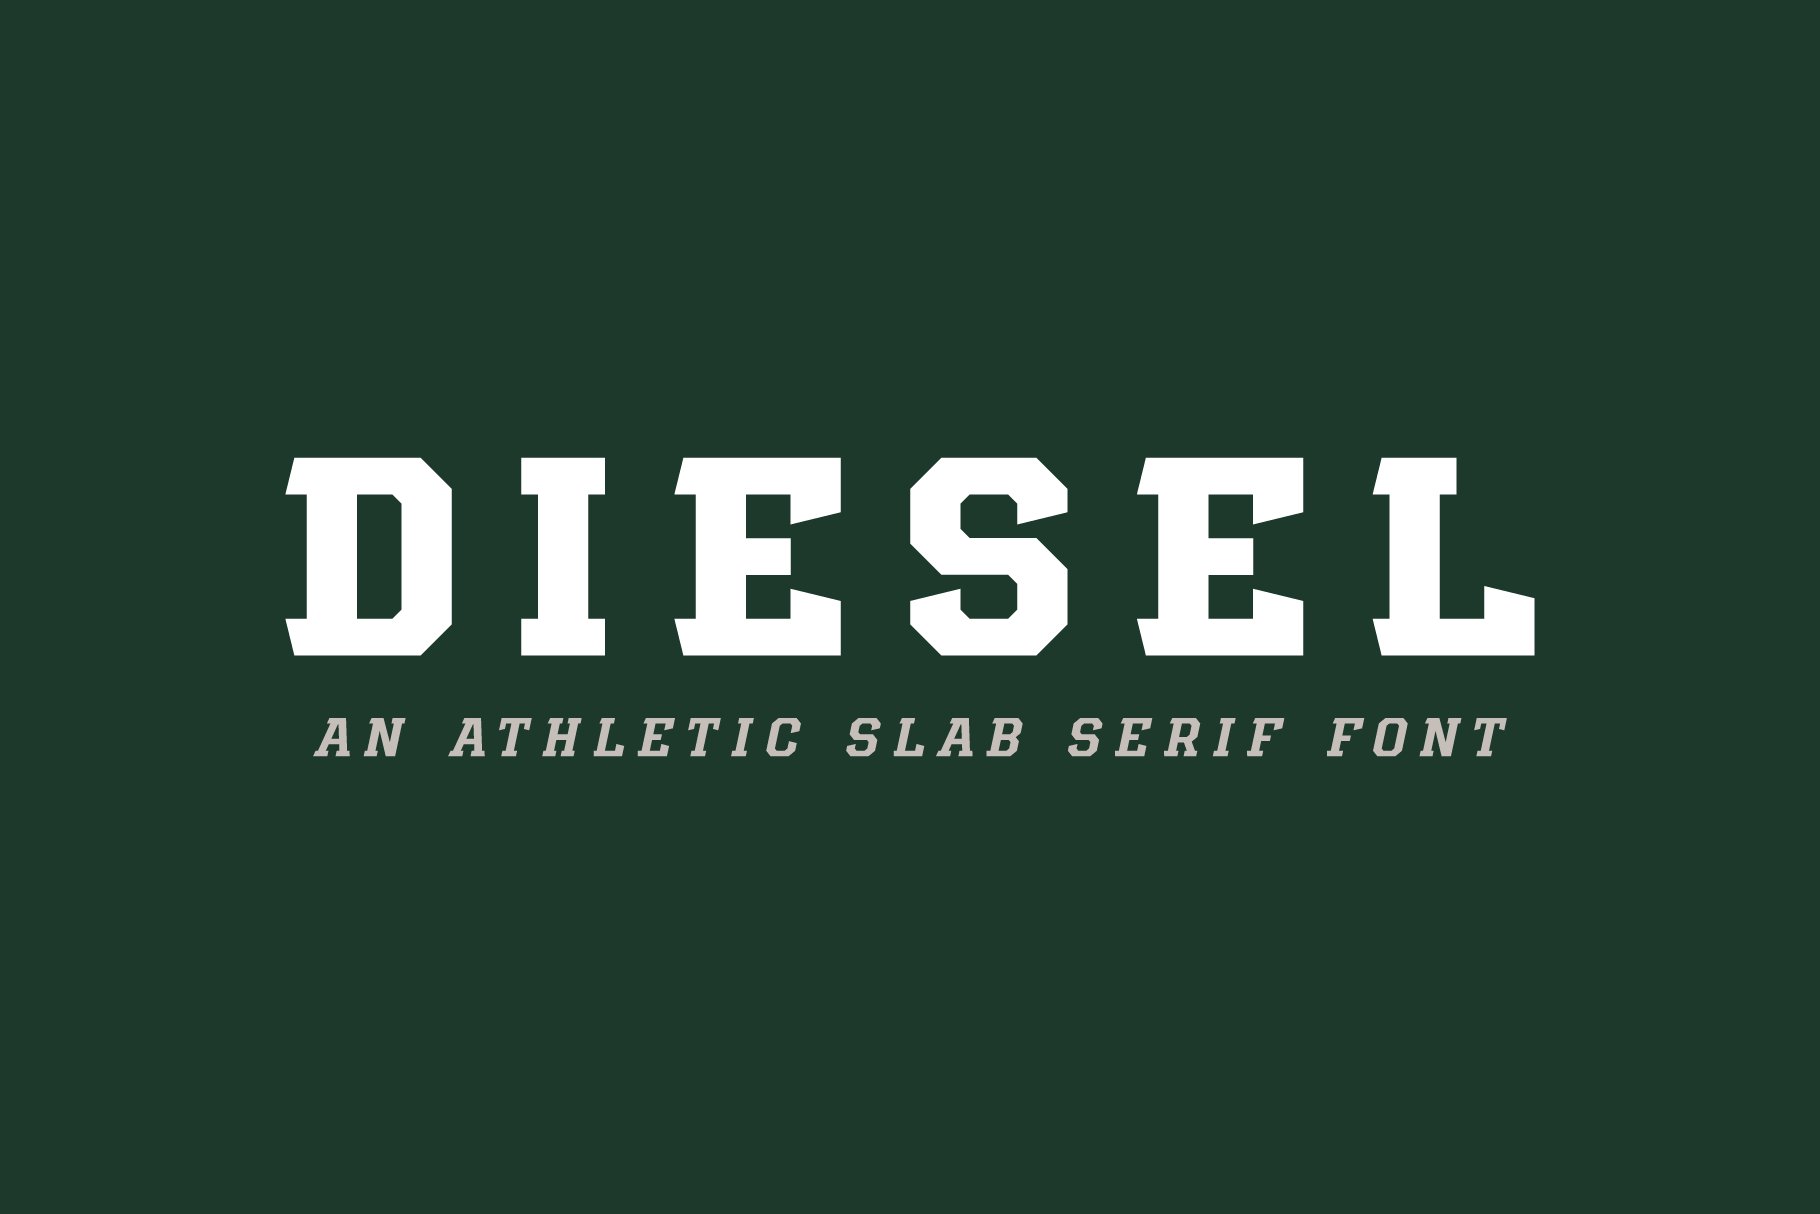 Diesel cover image.